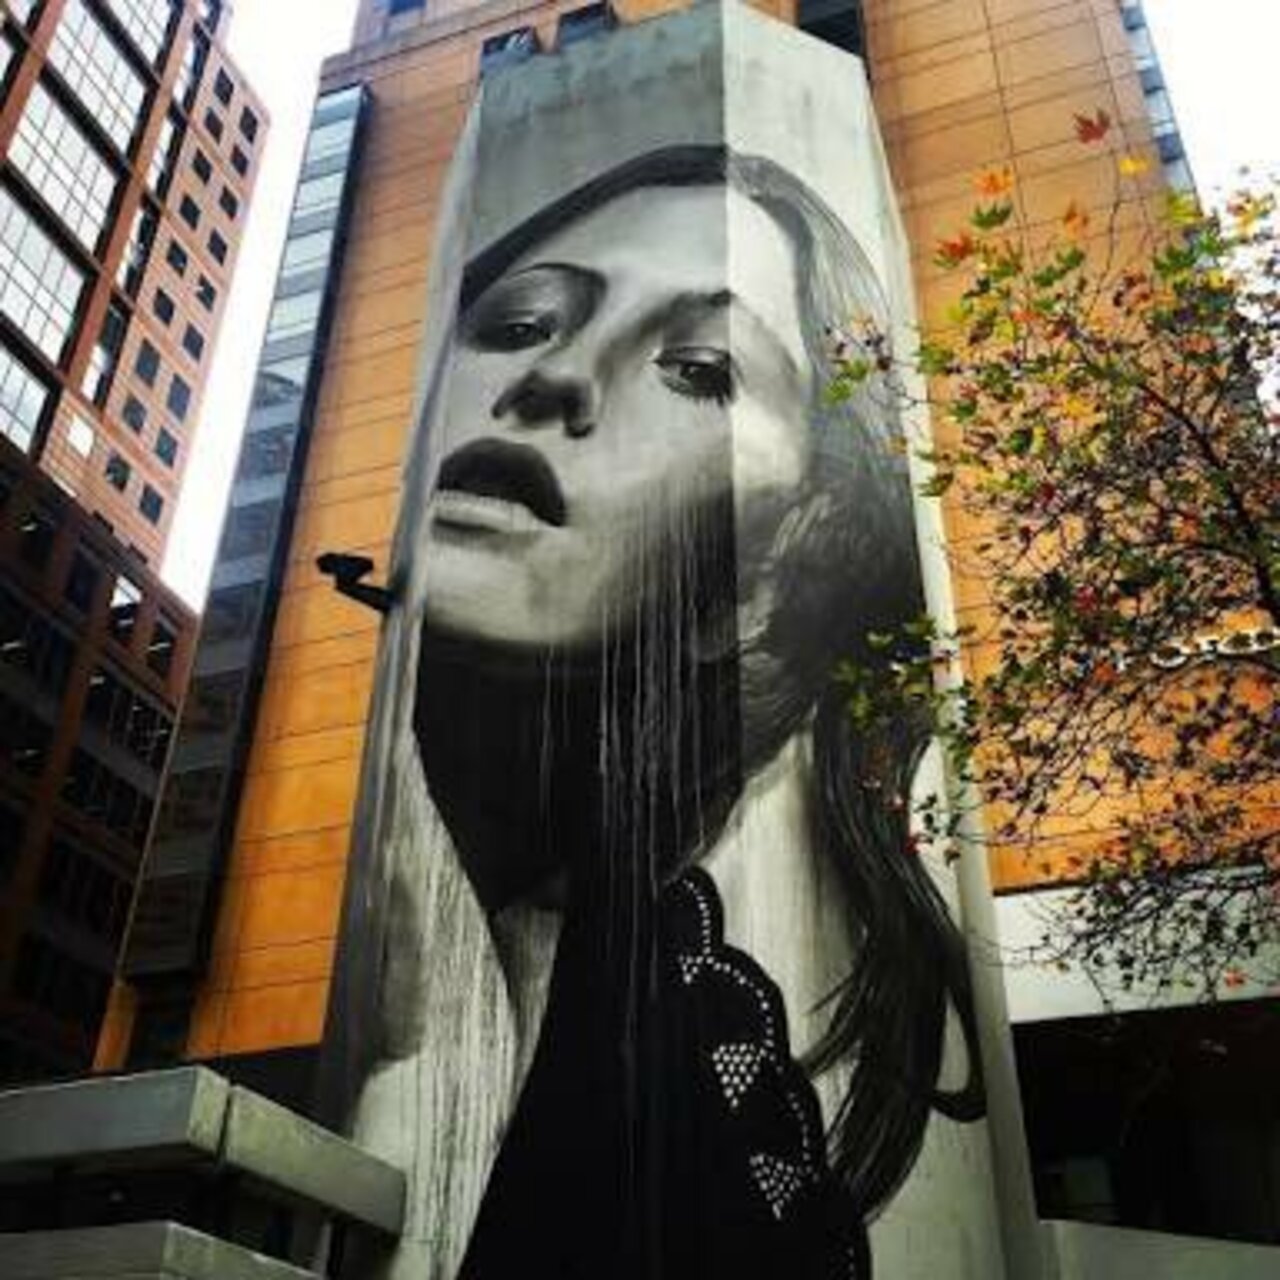 Mural by Rone, Melbourne, Australia #Streetart #urbanart #graffiti #mural #art #Melbourne #Australia https://t.co/VamyoIySsk